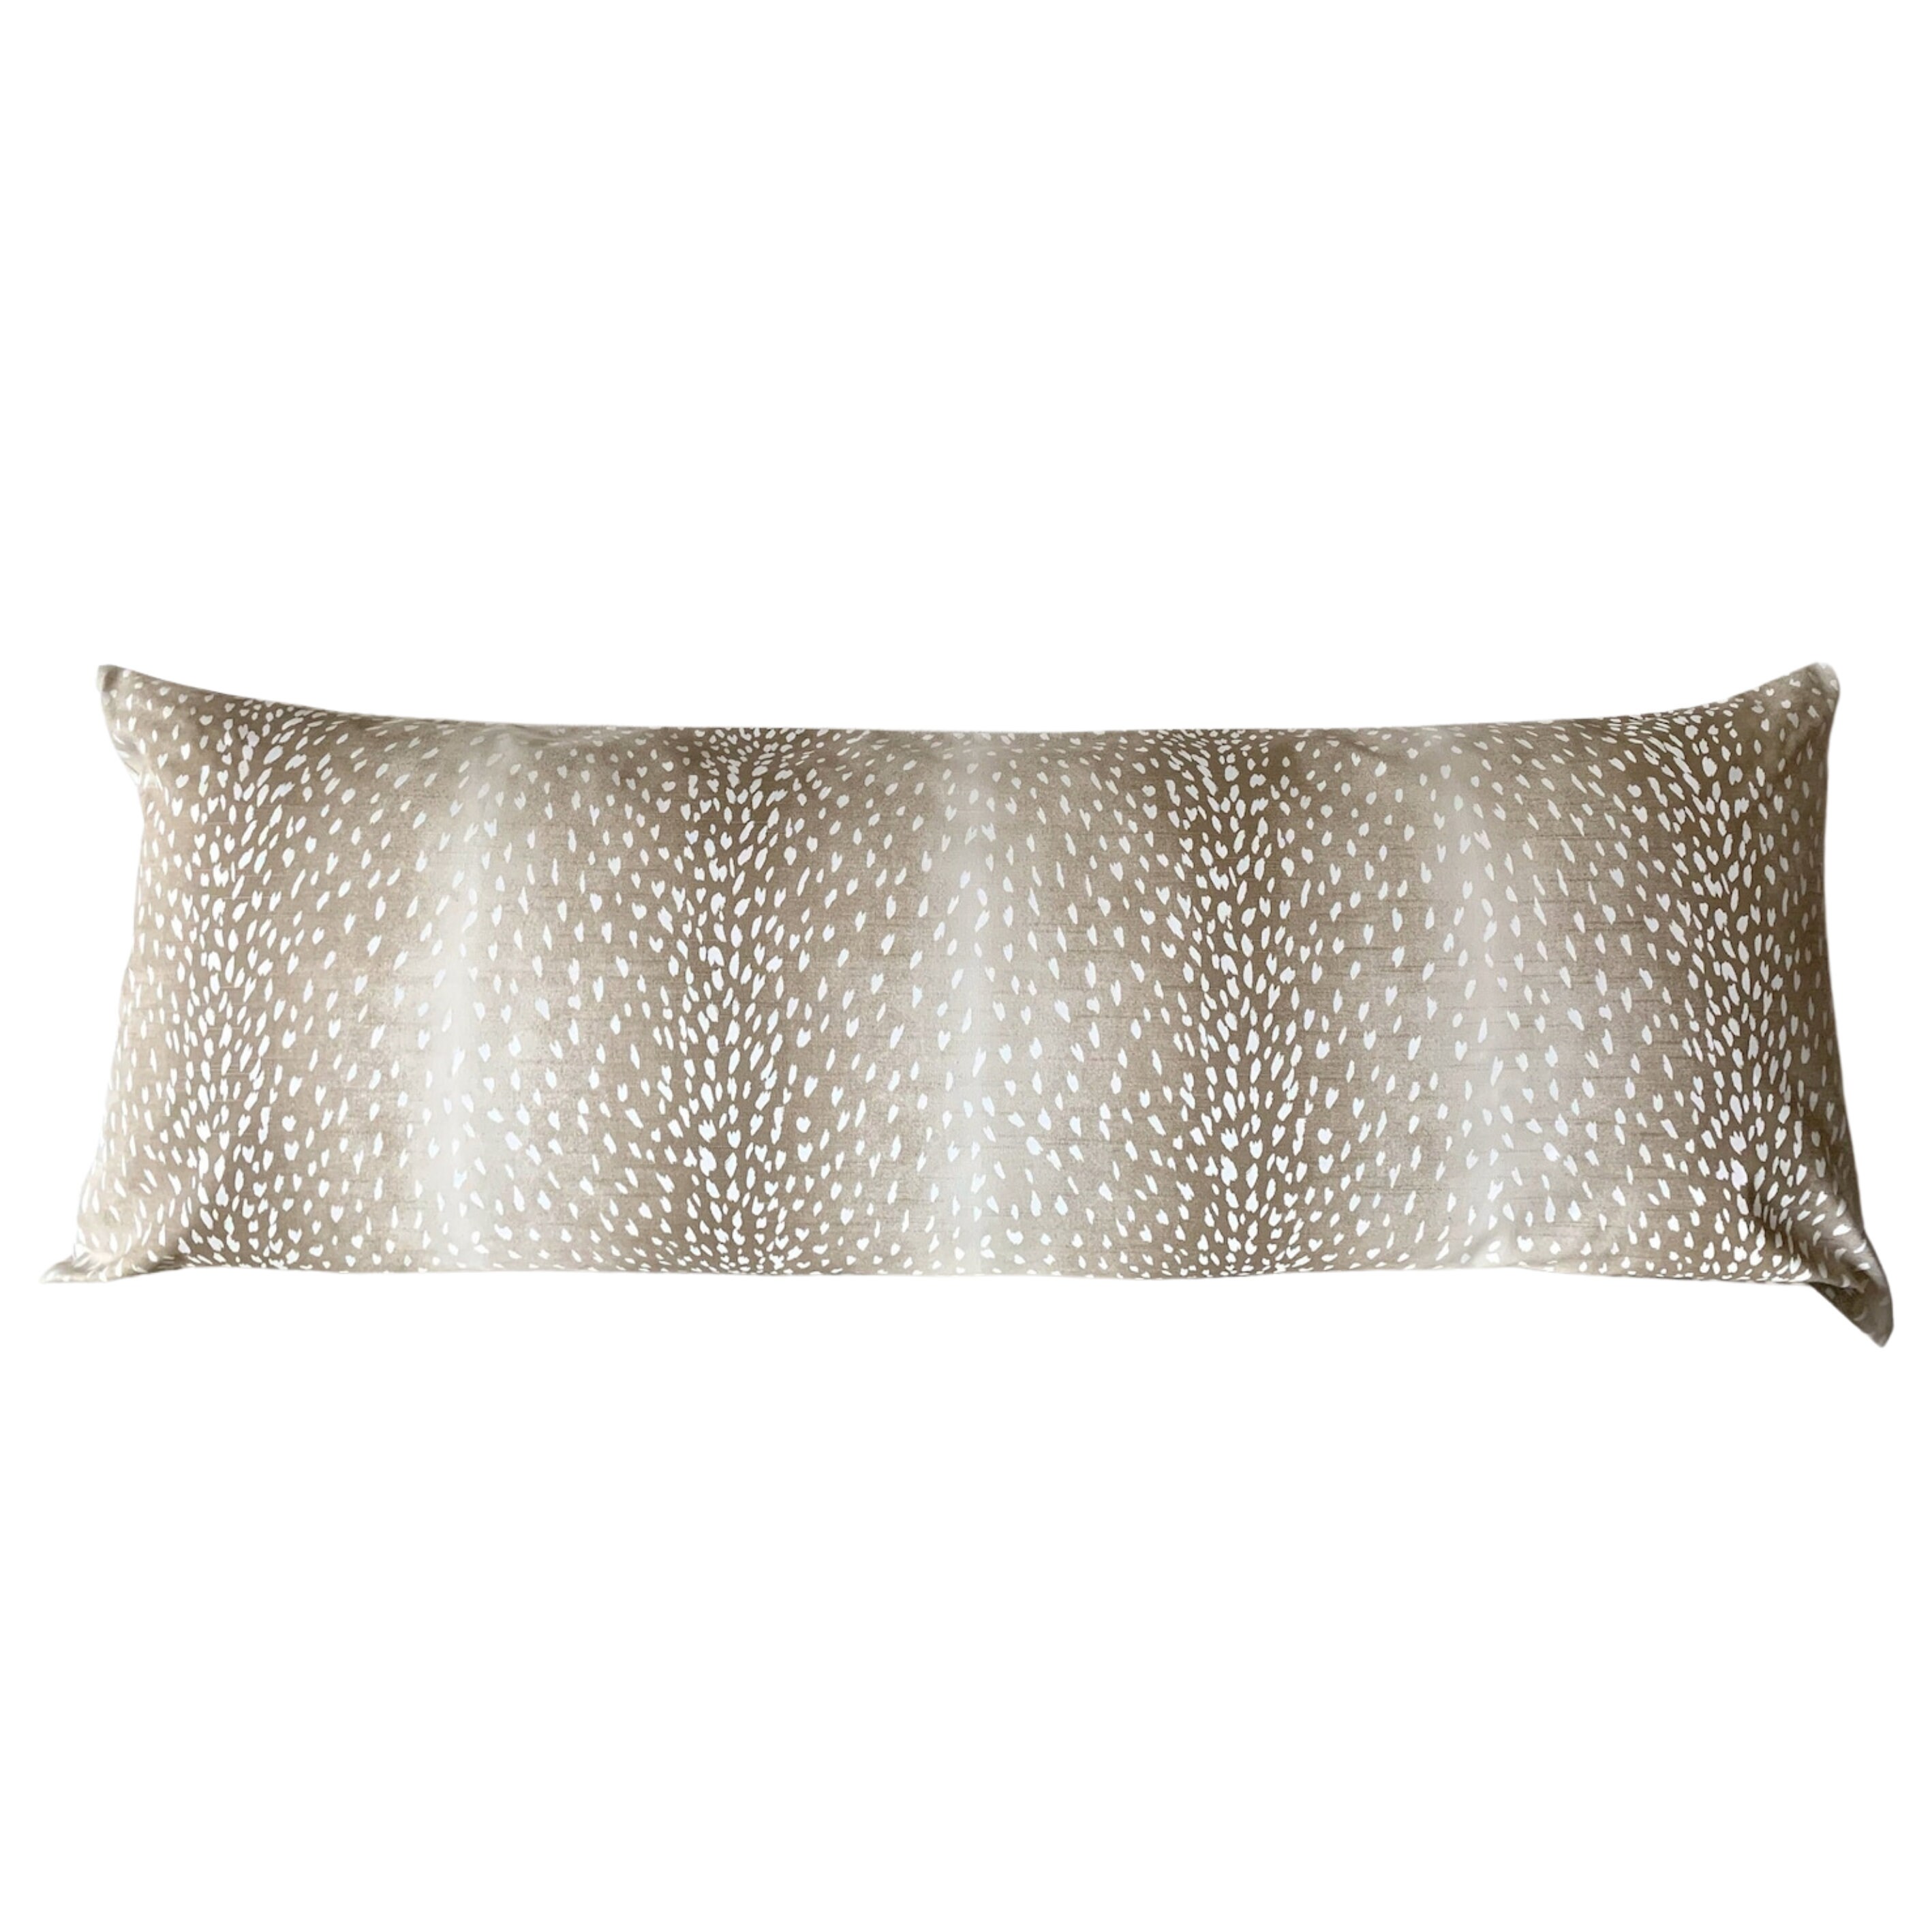 Extra Long Lumbar Fawn Antelope Pillow Cover